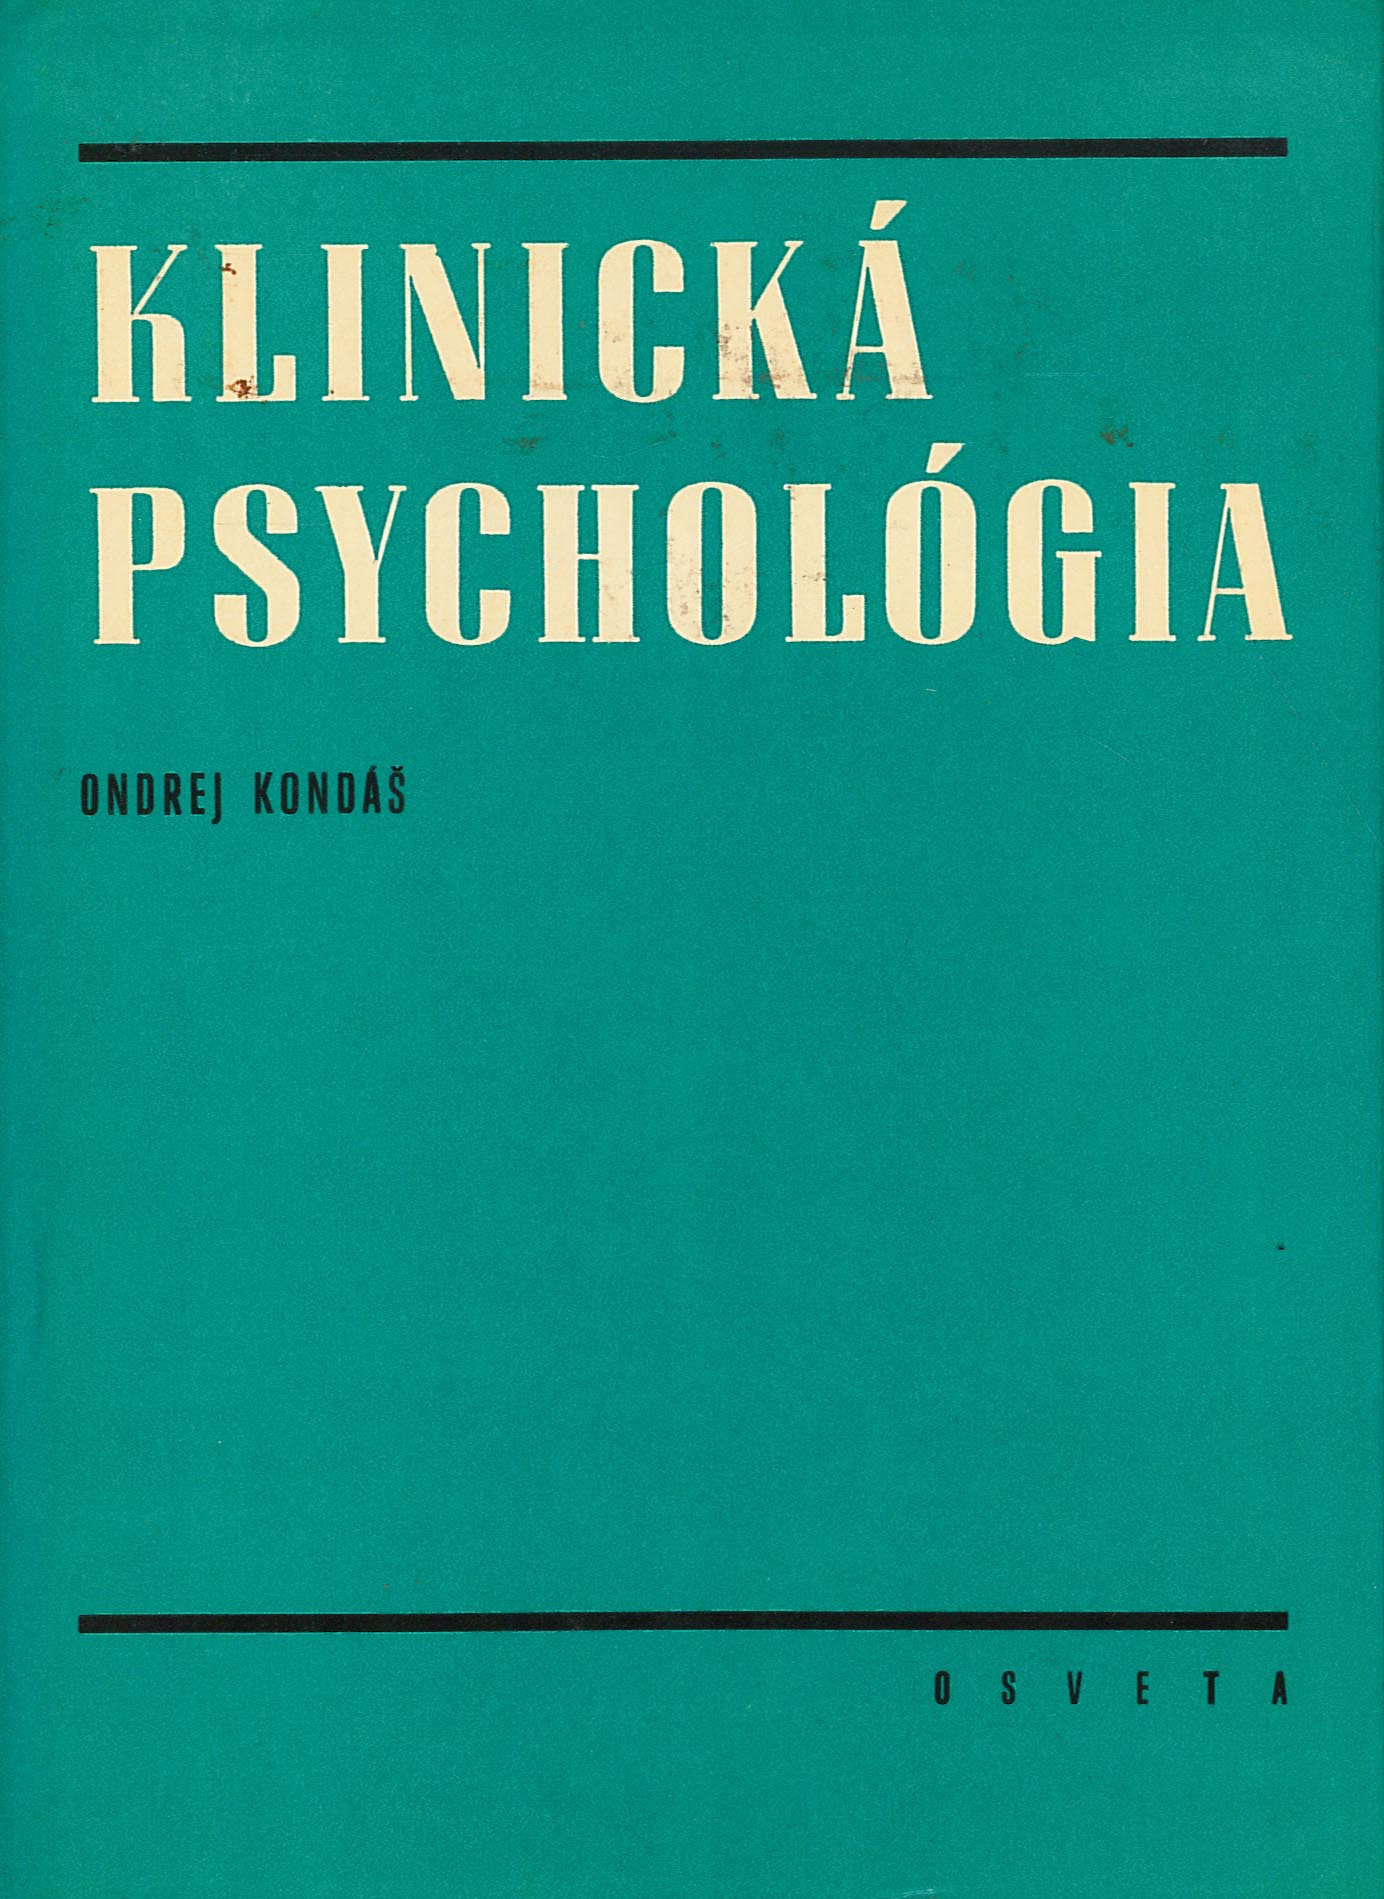 Klinická psychológia (Ondrej Kondáš)